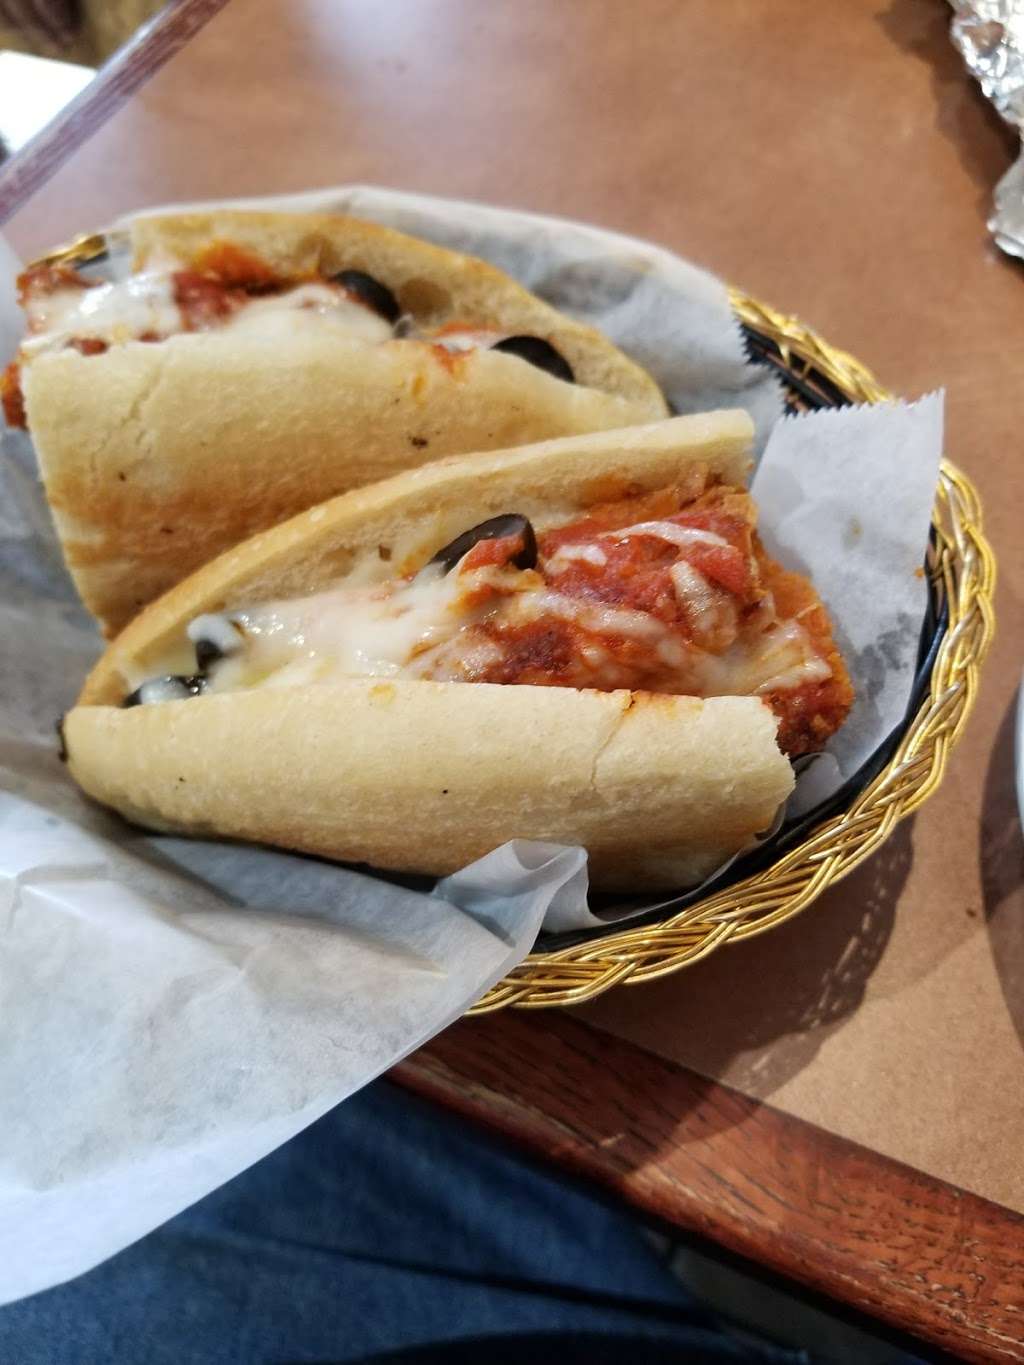 Original Italian Pizza | 300 Mauch Chunk St, Pottsville, PA 17901, USA | Phone: (570) 622-1500